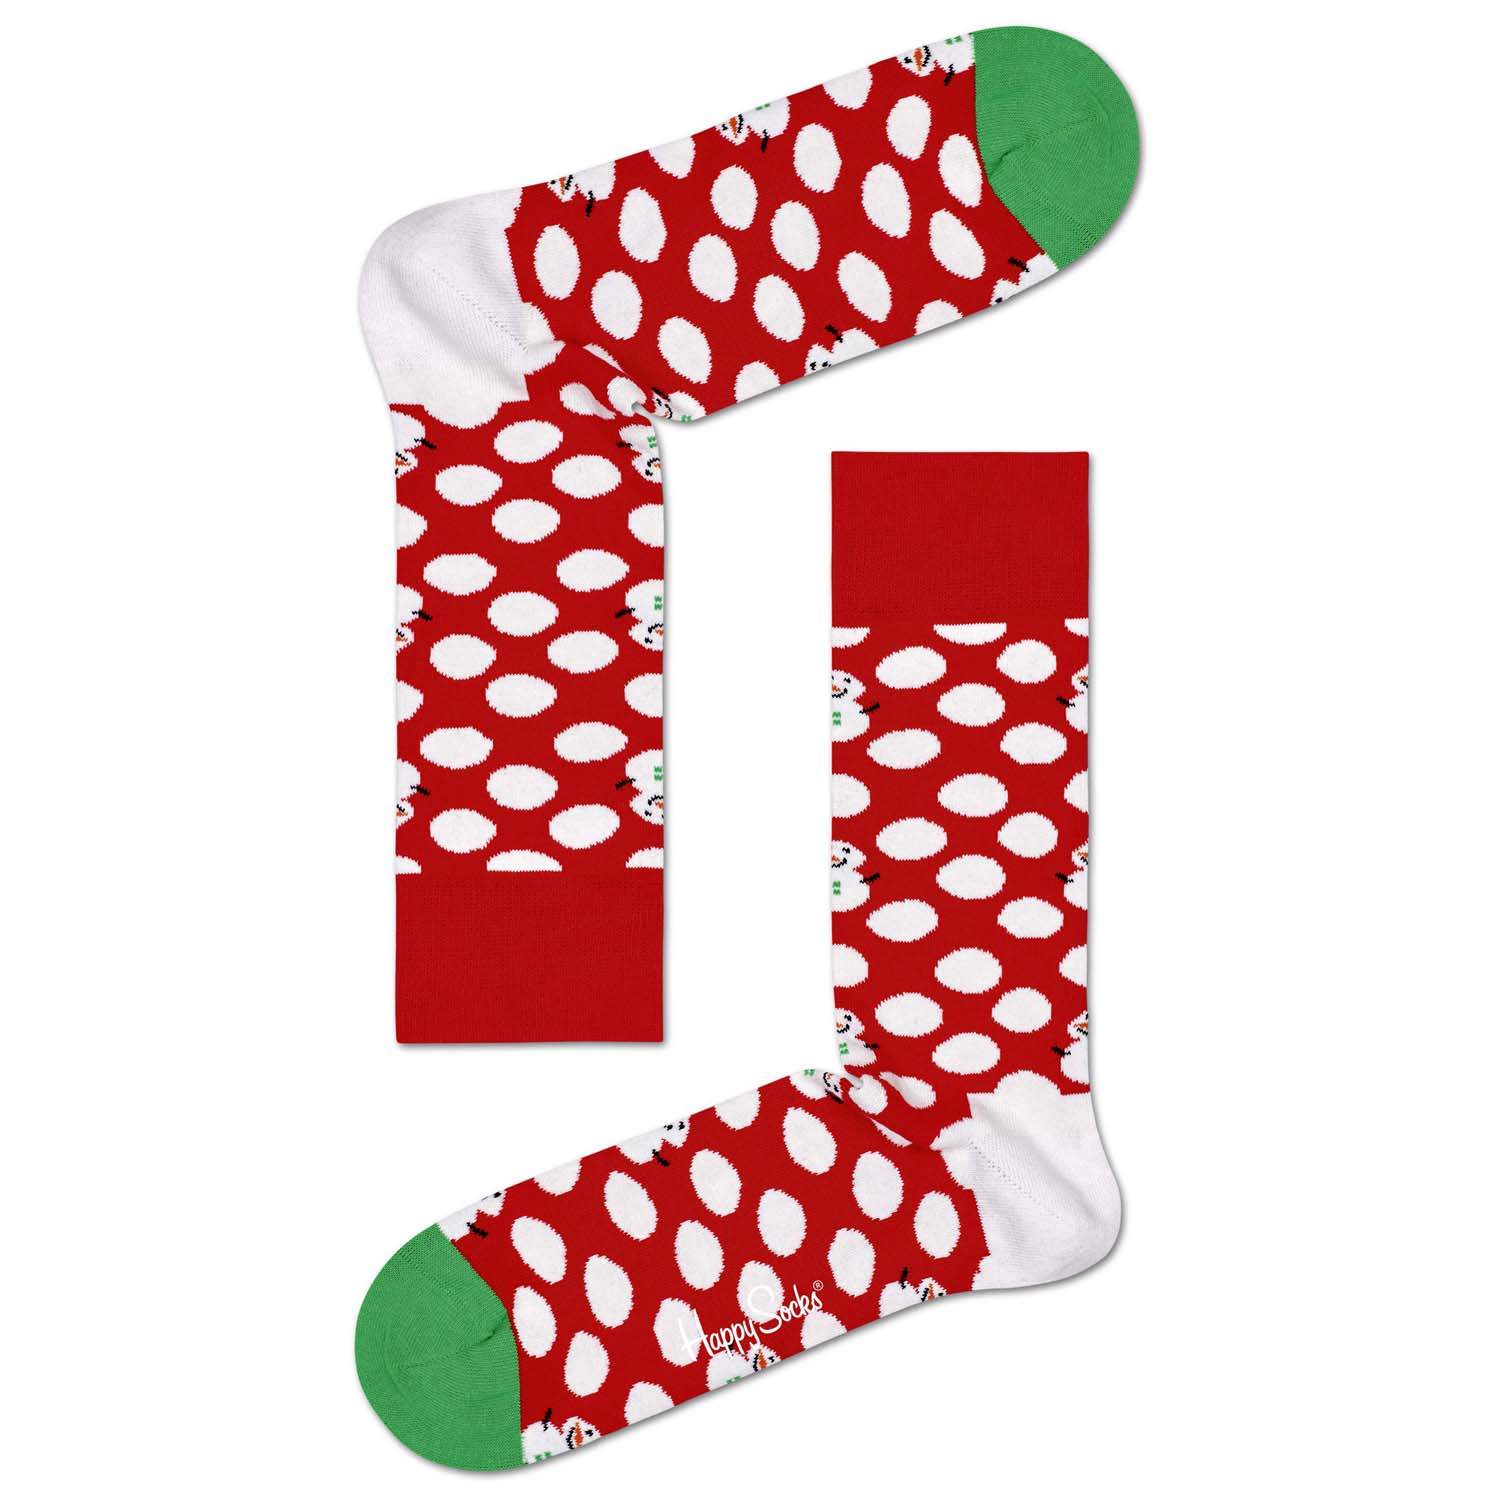 Подарочный набор носков унисекс Happy Socks Holidayв зеленый 41-46